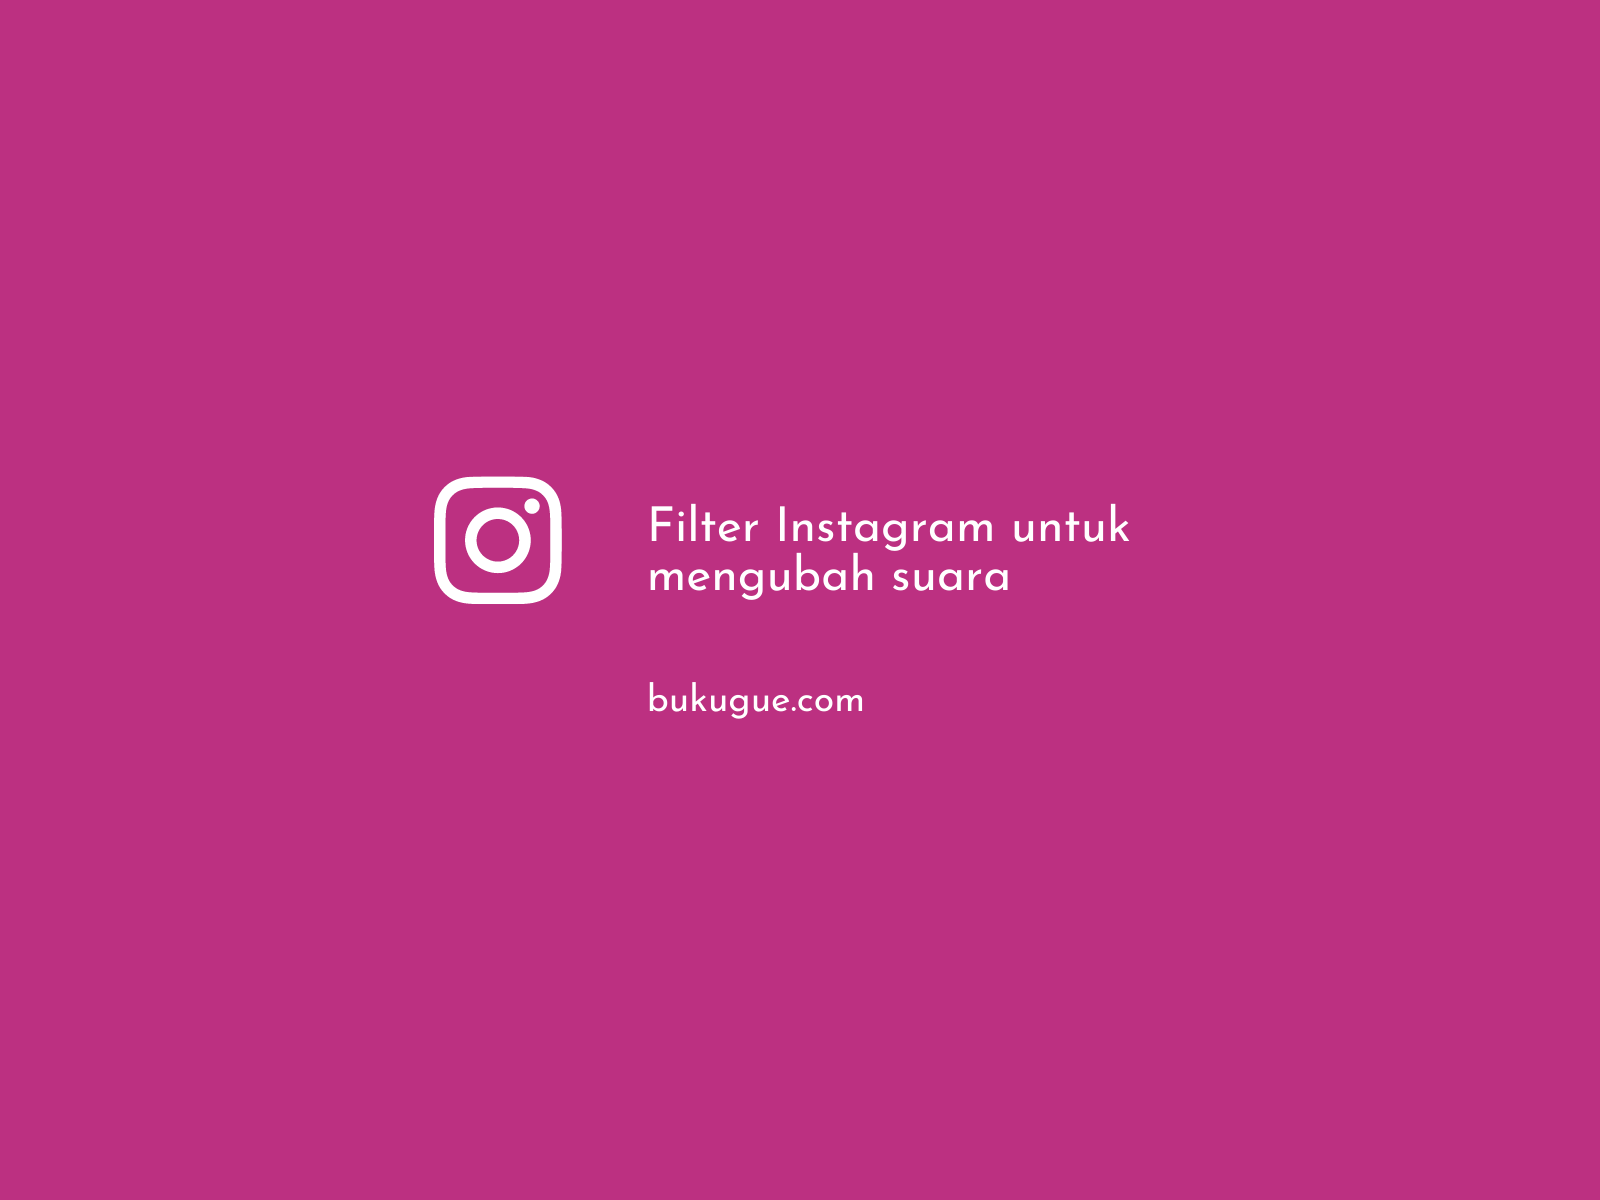 Cara menggunakan filter suara Instagram untuk suara bagus dan unik